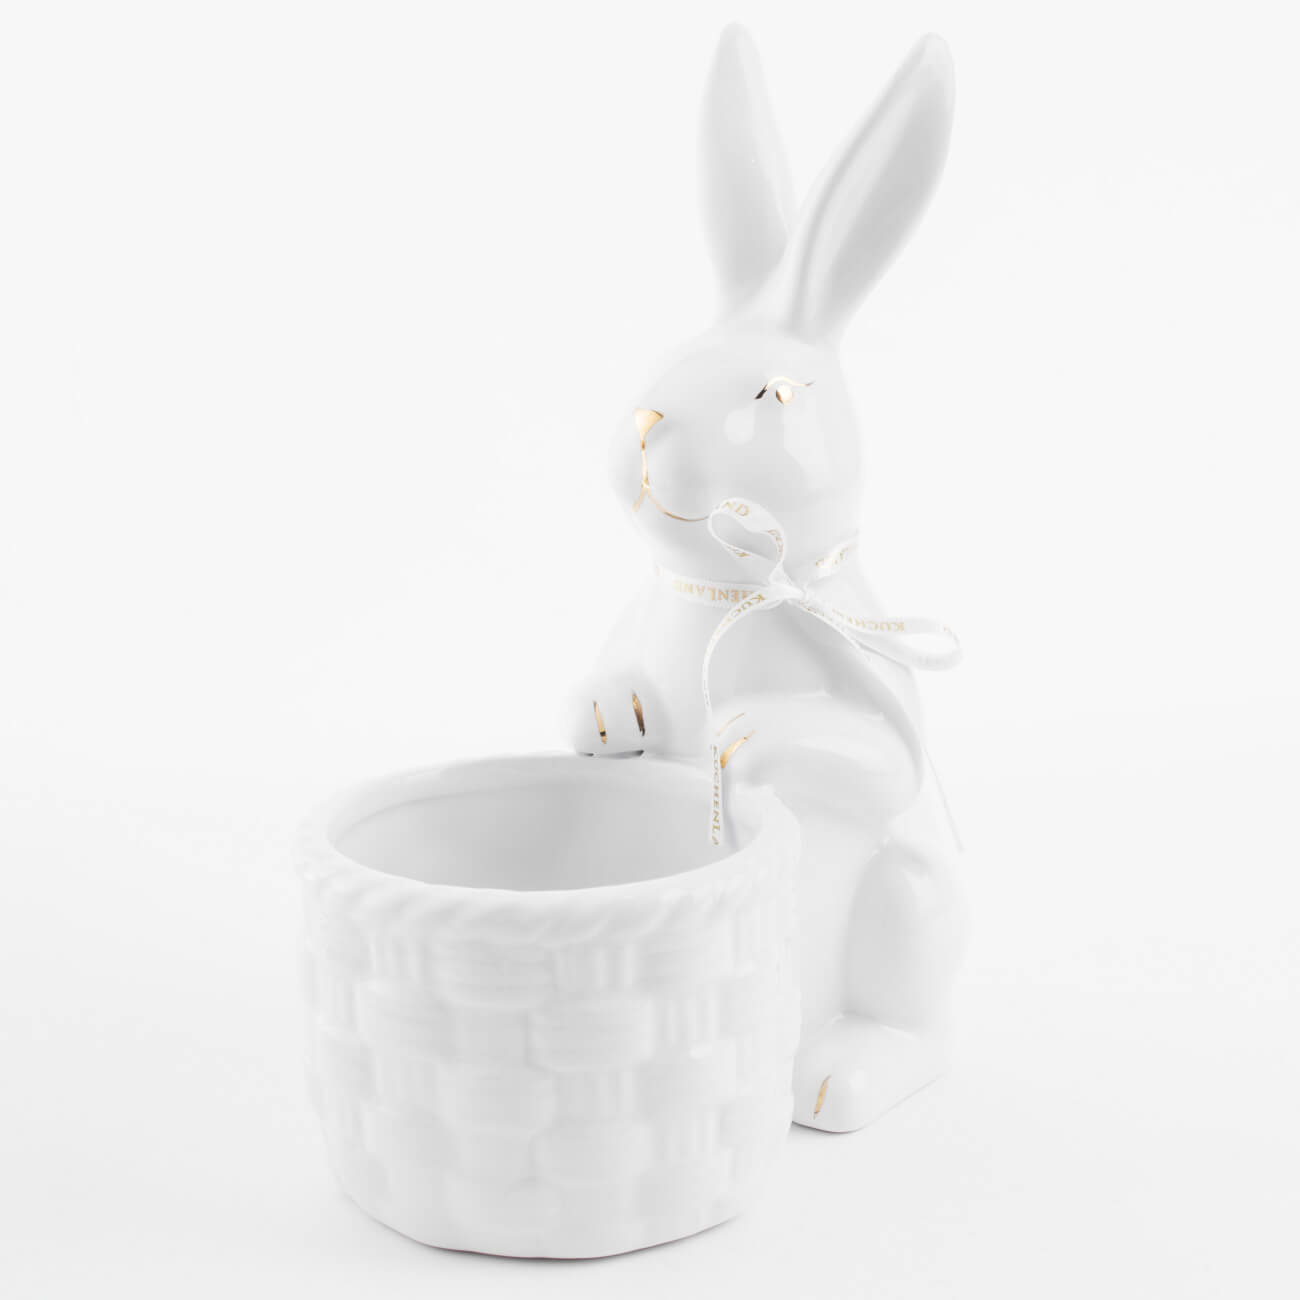 Конфетница, 18x23 см, керамика, бело-золотистая, Кролик с плетенной корзиной, Easter gold подставка для яйца 12 см полирезин бело золотистая кролик с тележкой easter gold